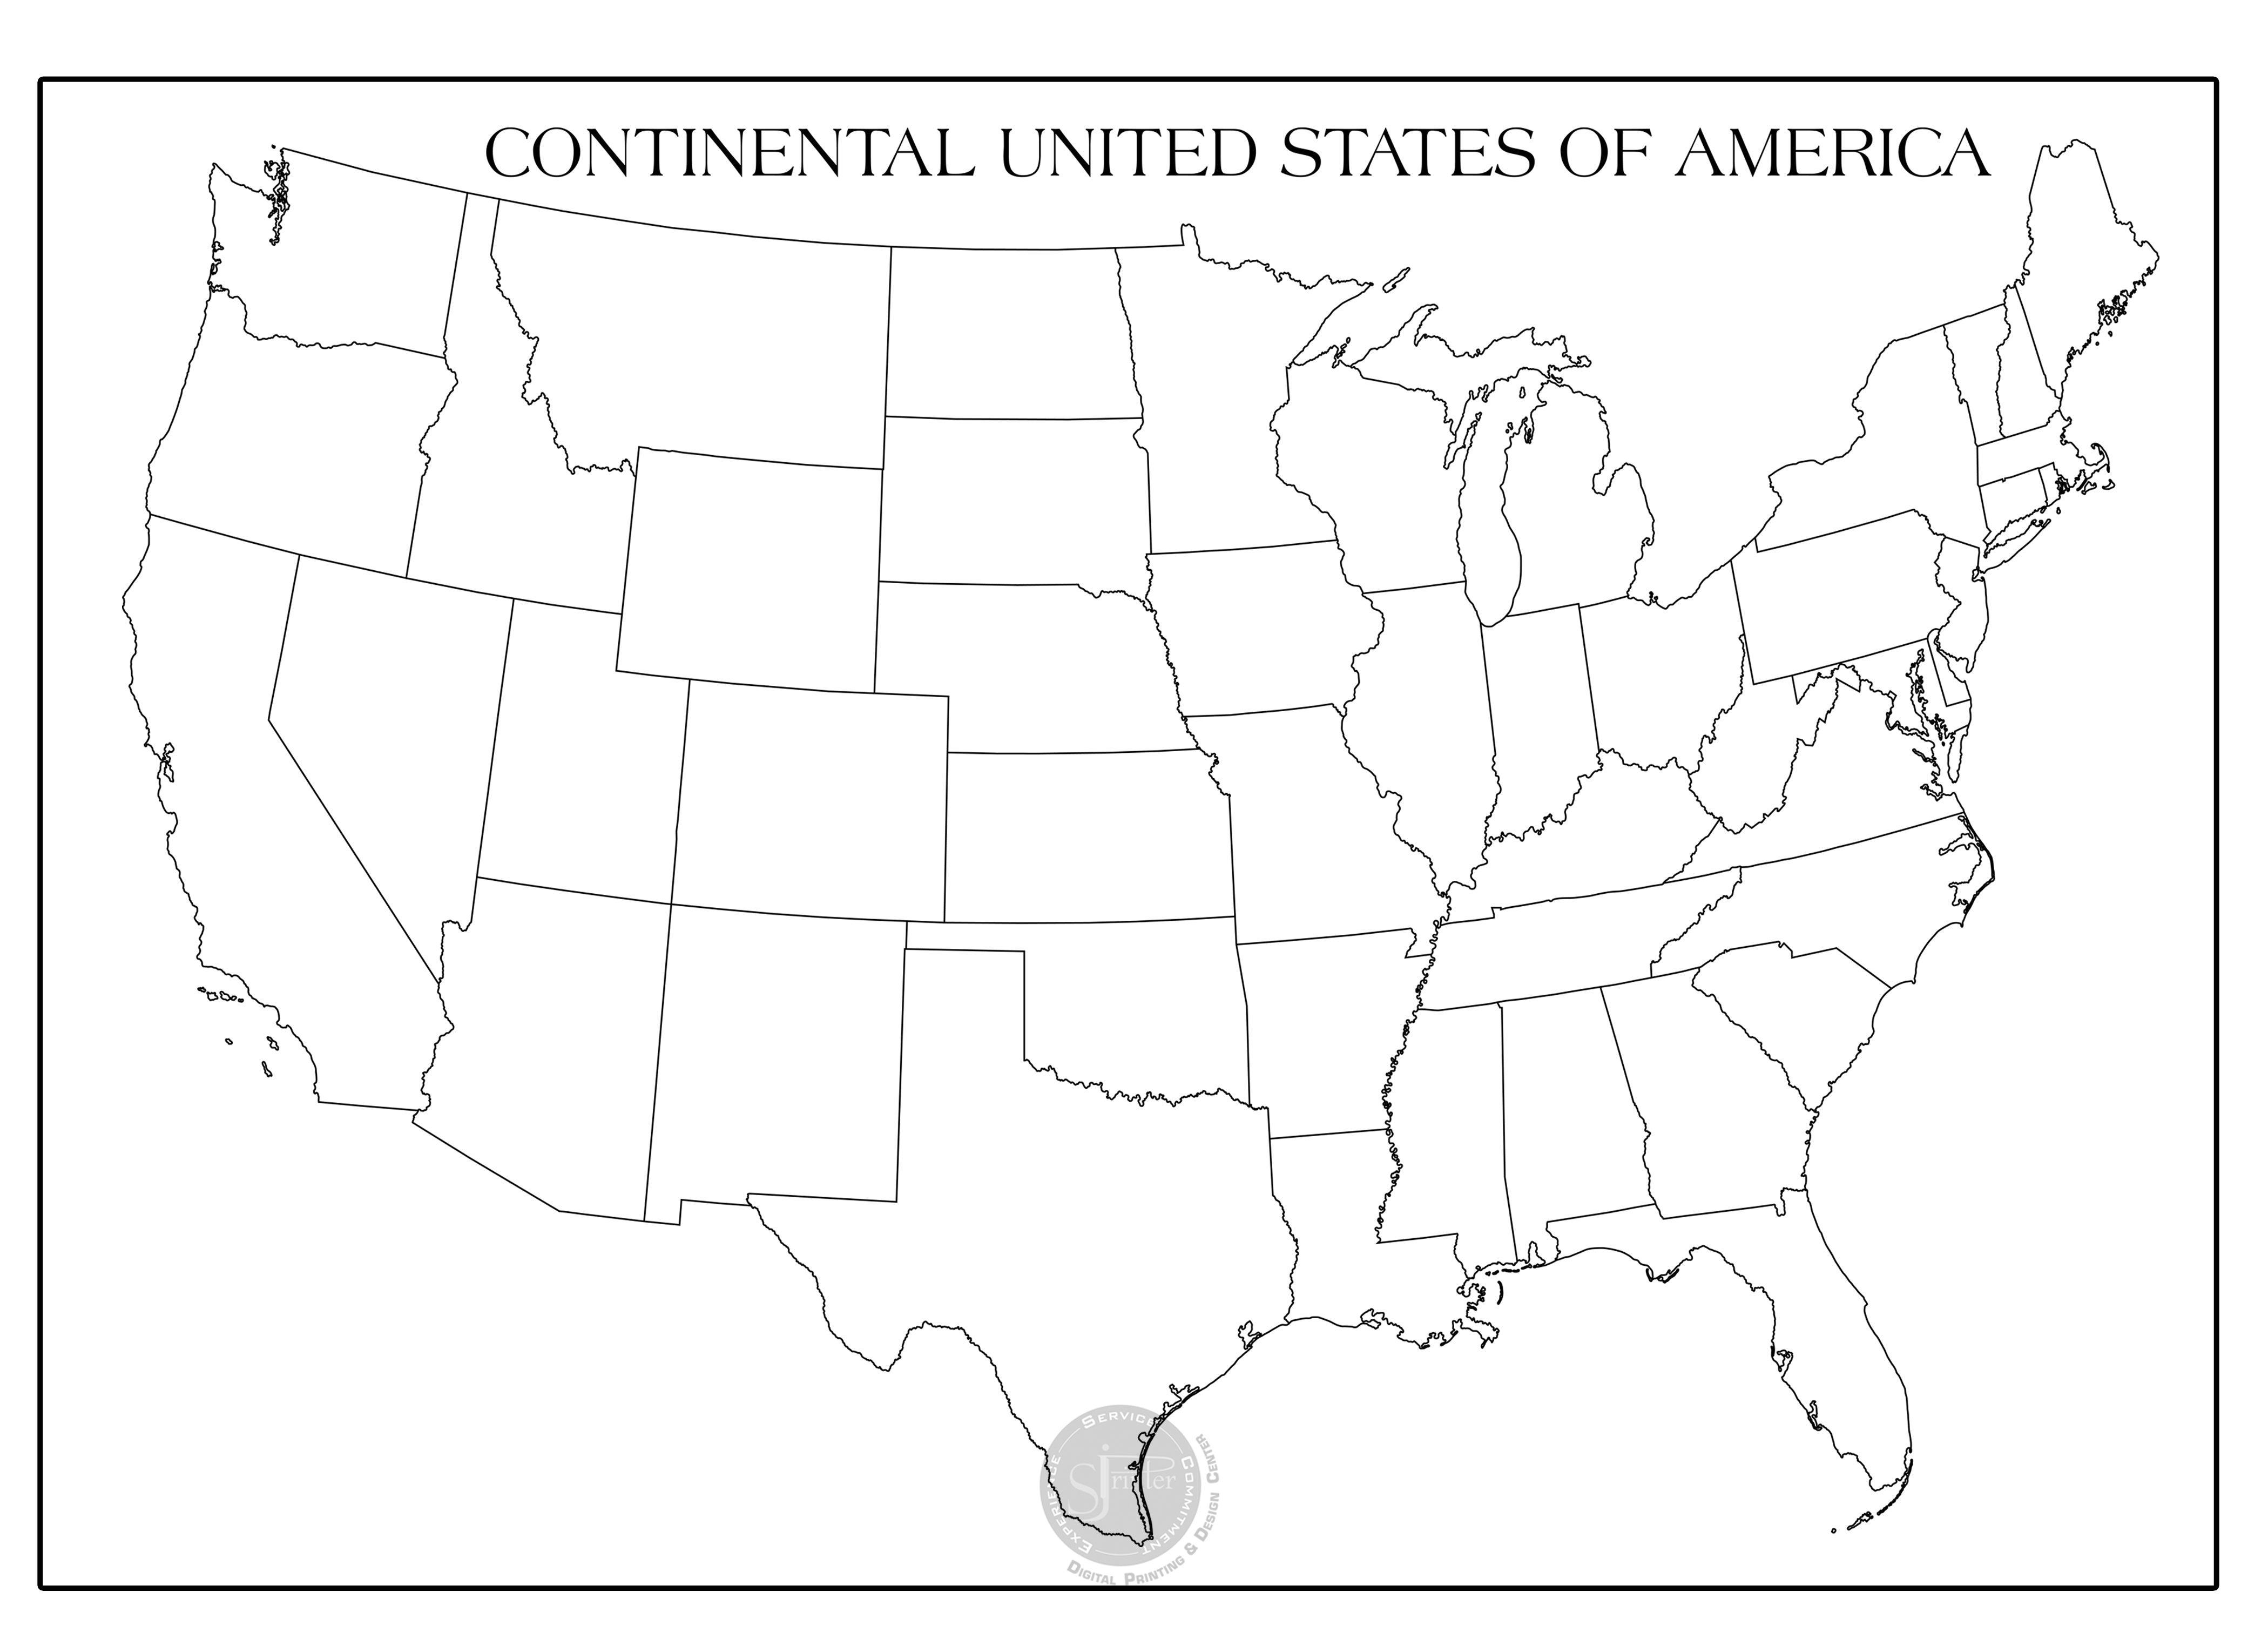 USA Map - 30" x 42" - SJPrinter 